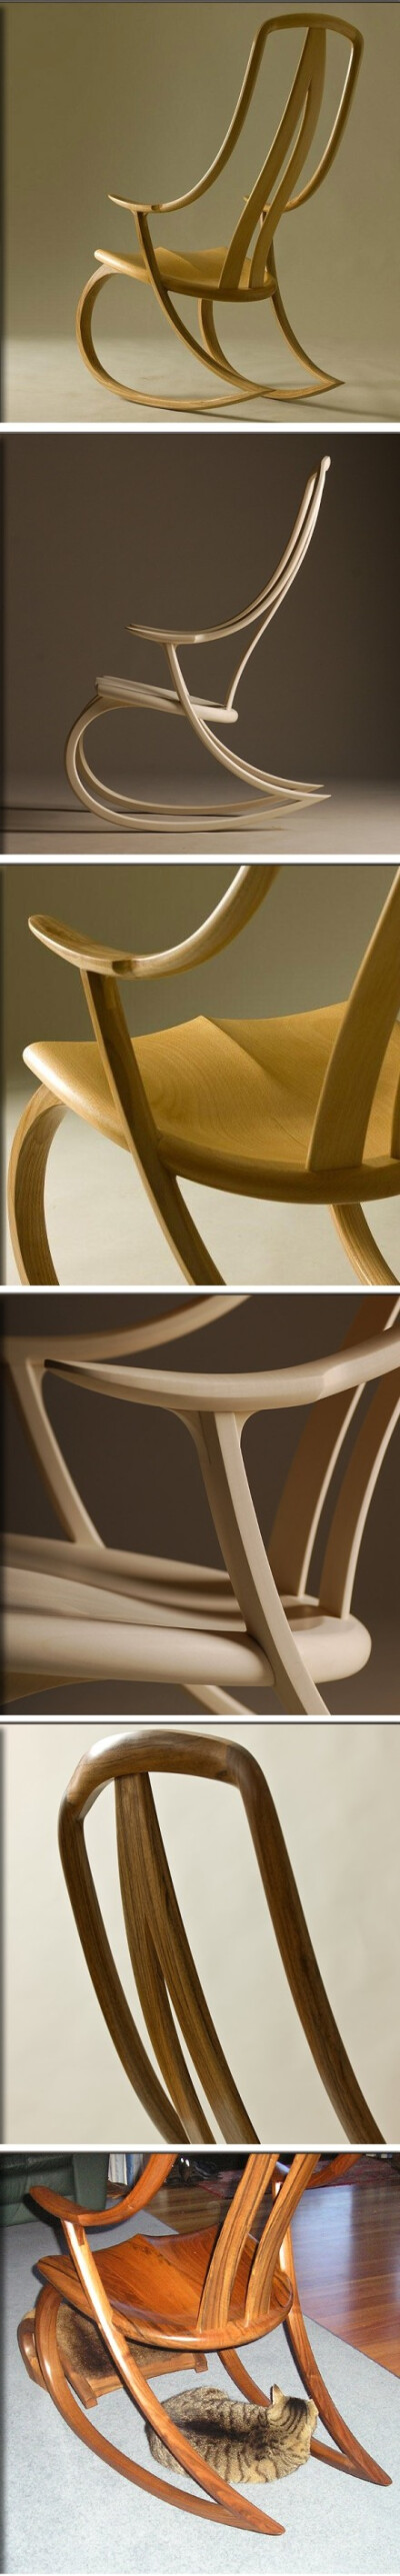 马来西亚木工David haig设计制作的摇椅。